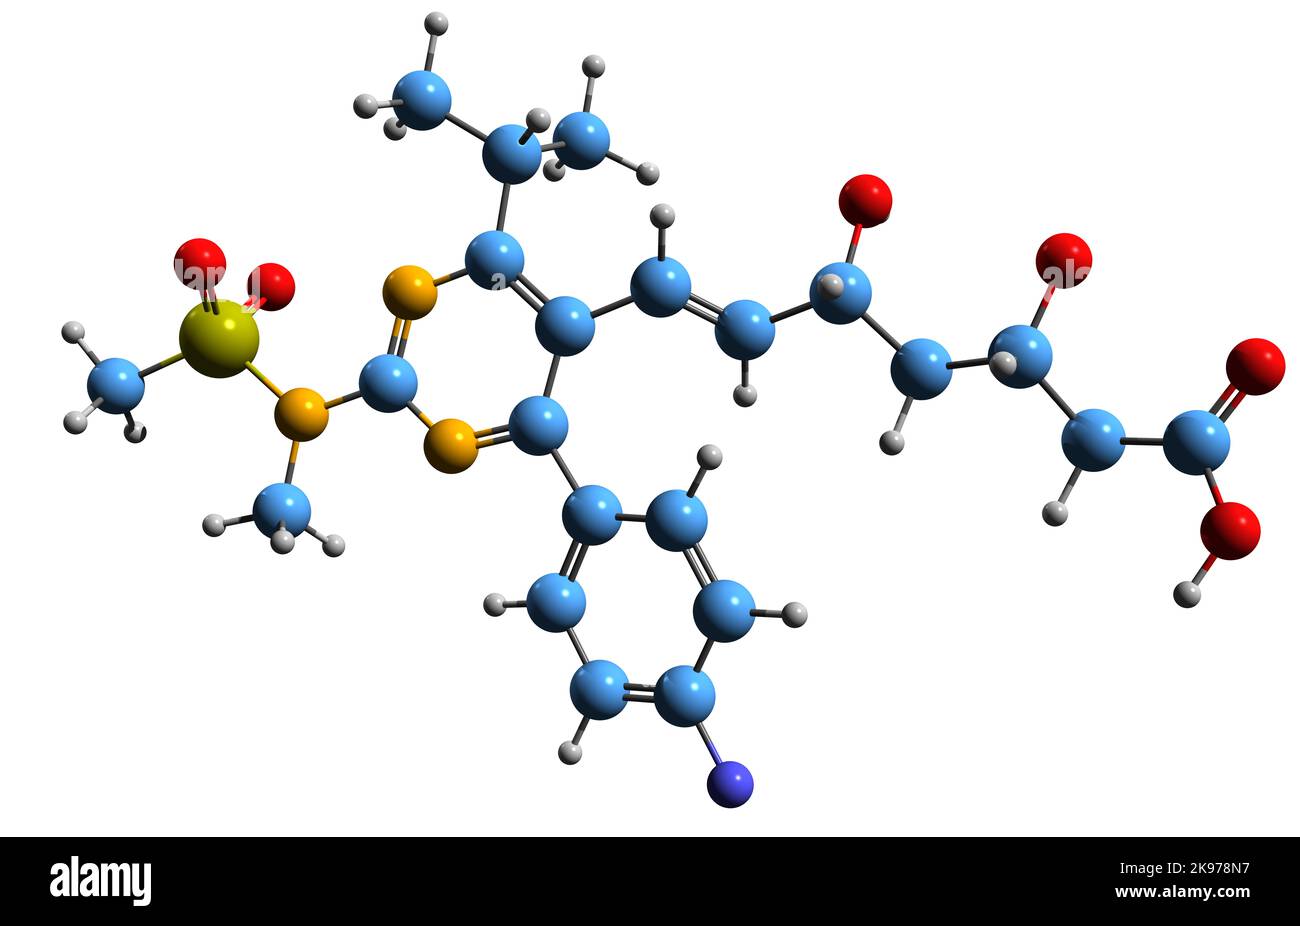 3D Abbildung der Skelettformel von Rosuvastatin - molekularchemische Struktur von Statin-Medikamenten auf weißem Hintergrund isoliert Stockfoto